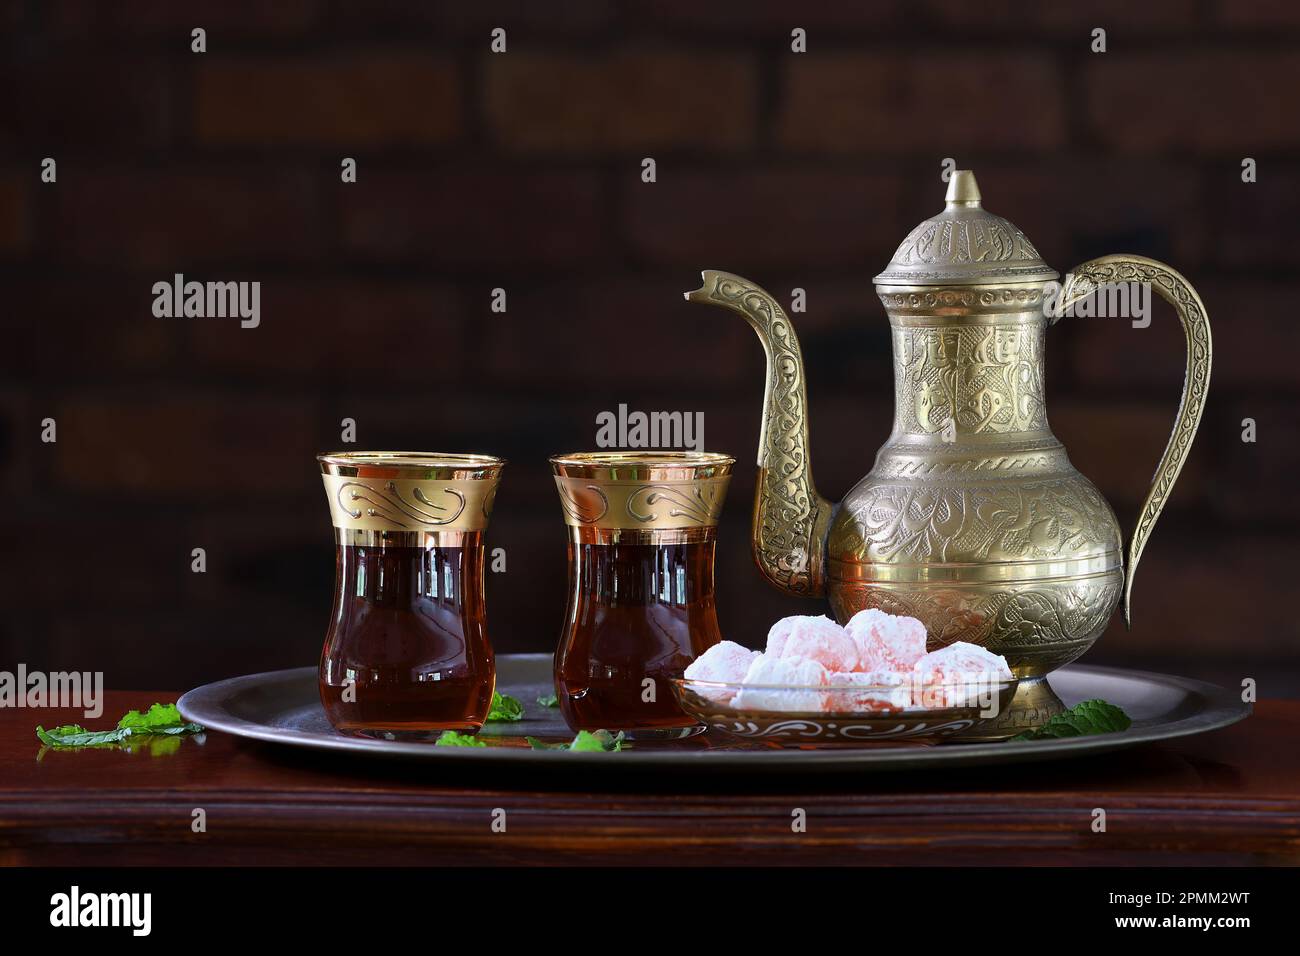 Théière turque ornée, classique et festive, deux verres et délices turcs traditionnels sur un plateau et une table en bois, dans un éclairage tamisé Banque D'Images